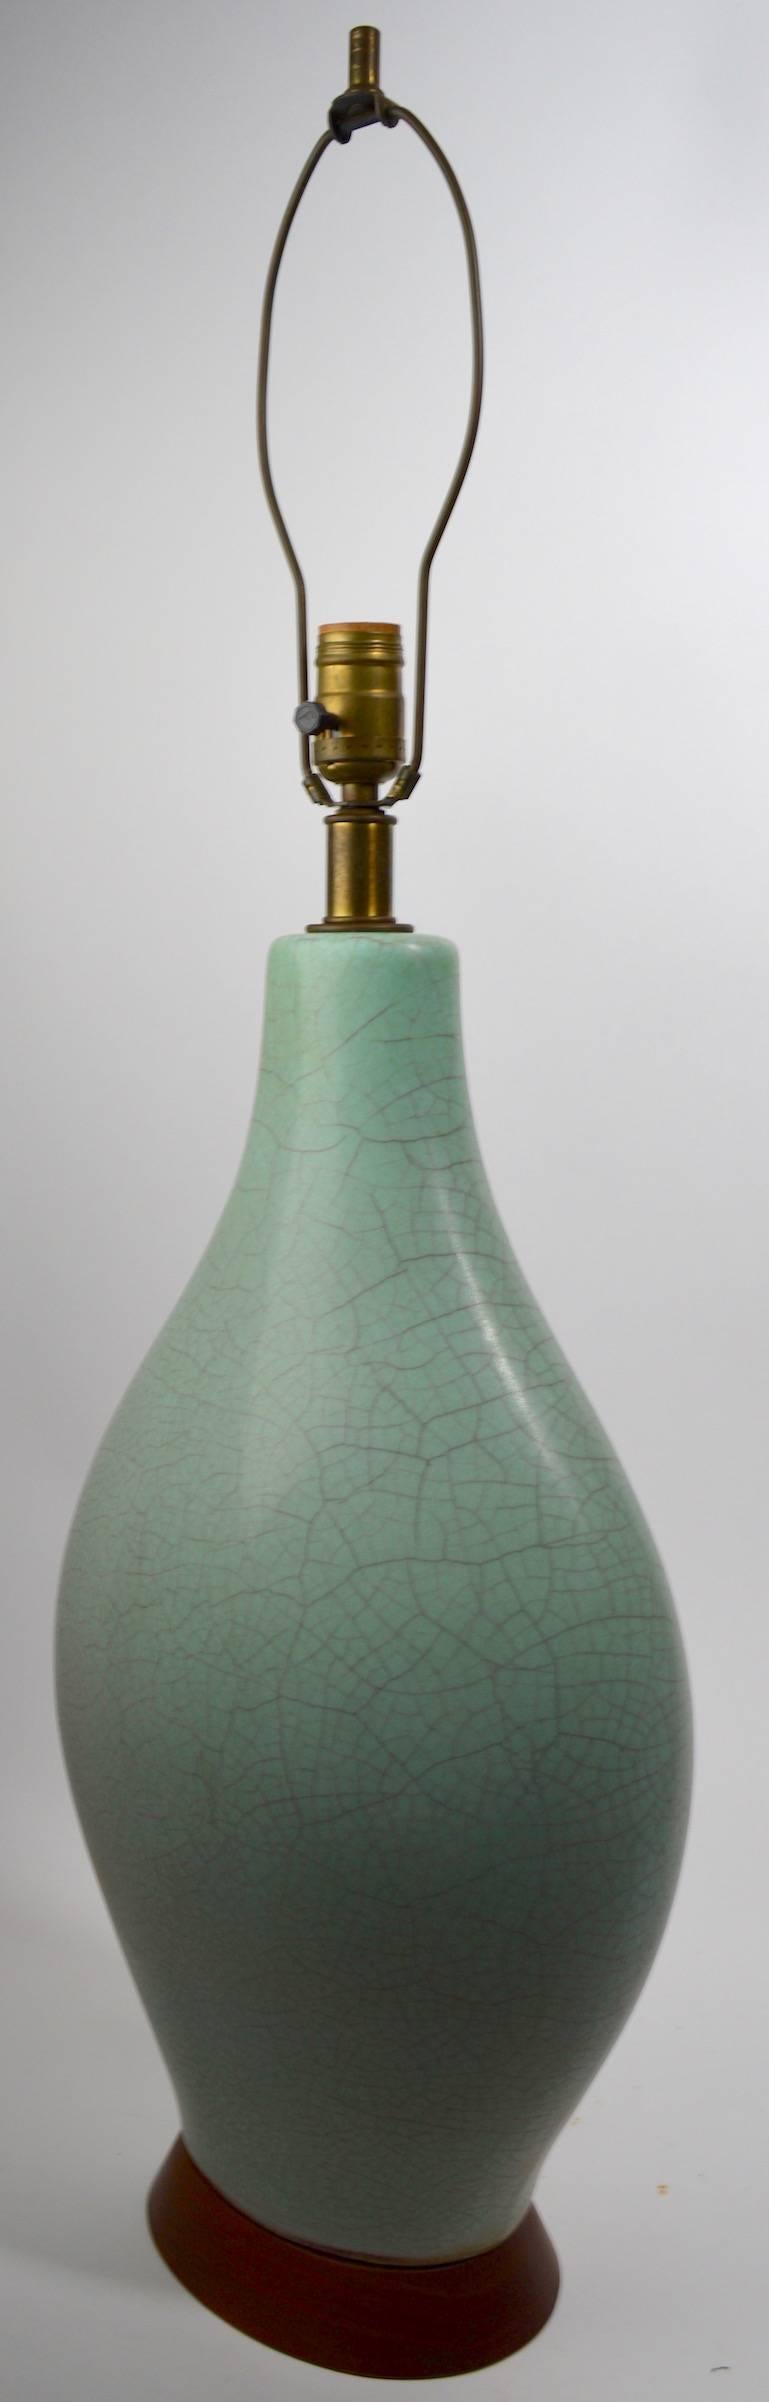 American Mid-Century Celadon Ceramic Lamp